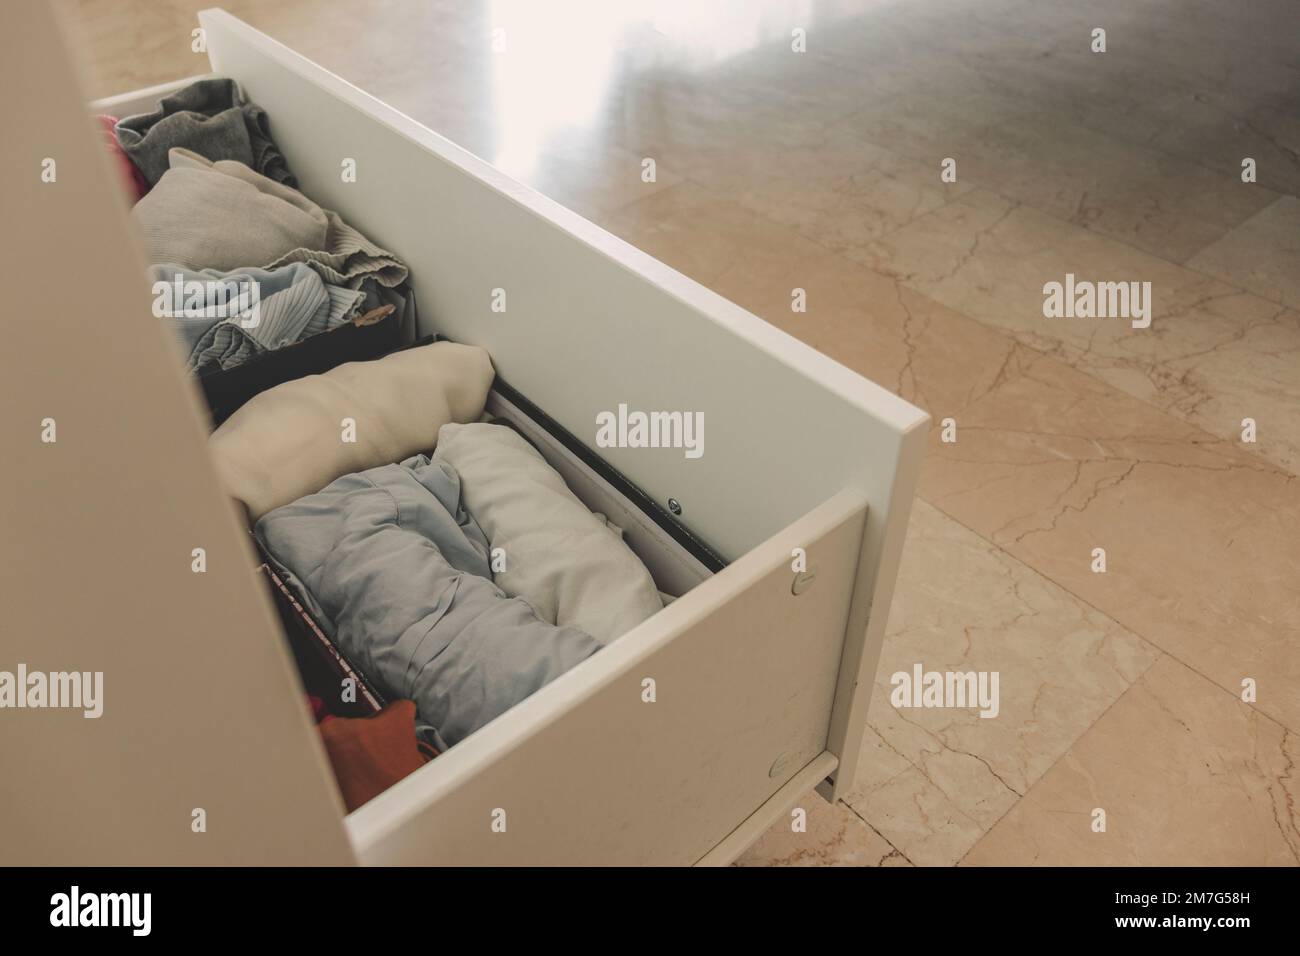 Vue en grand angle d'un tiroir avec des vêtements soigneusement pliés. Concept de minimalisme, de mess et de nettoyage de garde-robe. Banque D'Images